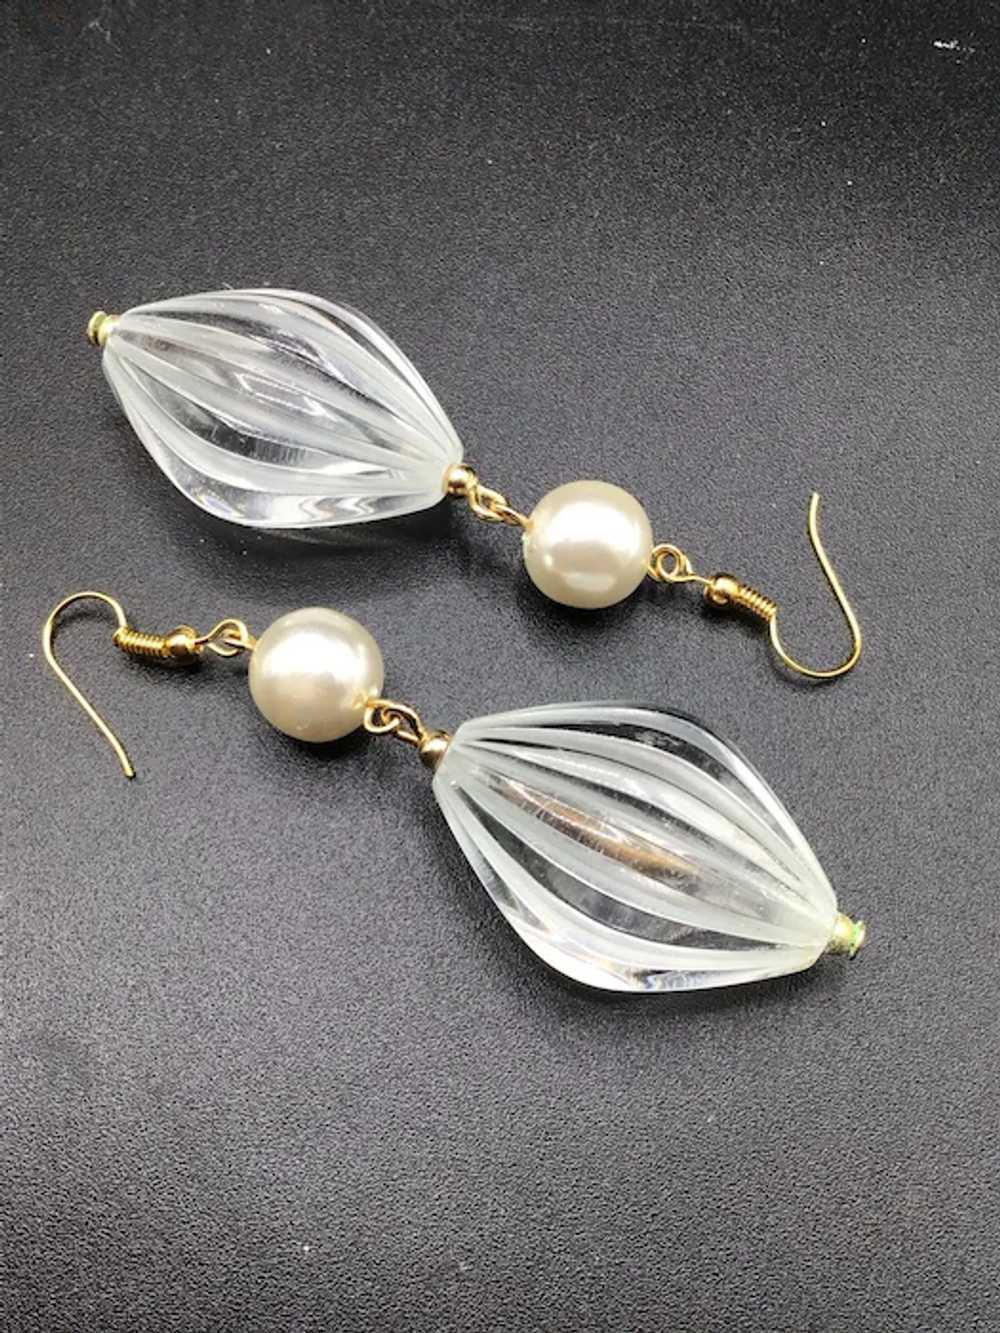 Vintage Retro Lucite & Pearls Dangle Earrings Hoo… - image 4